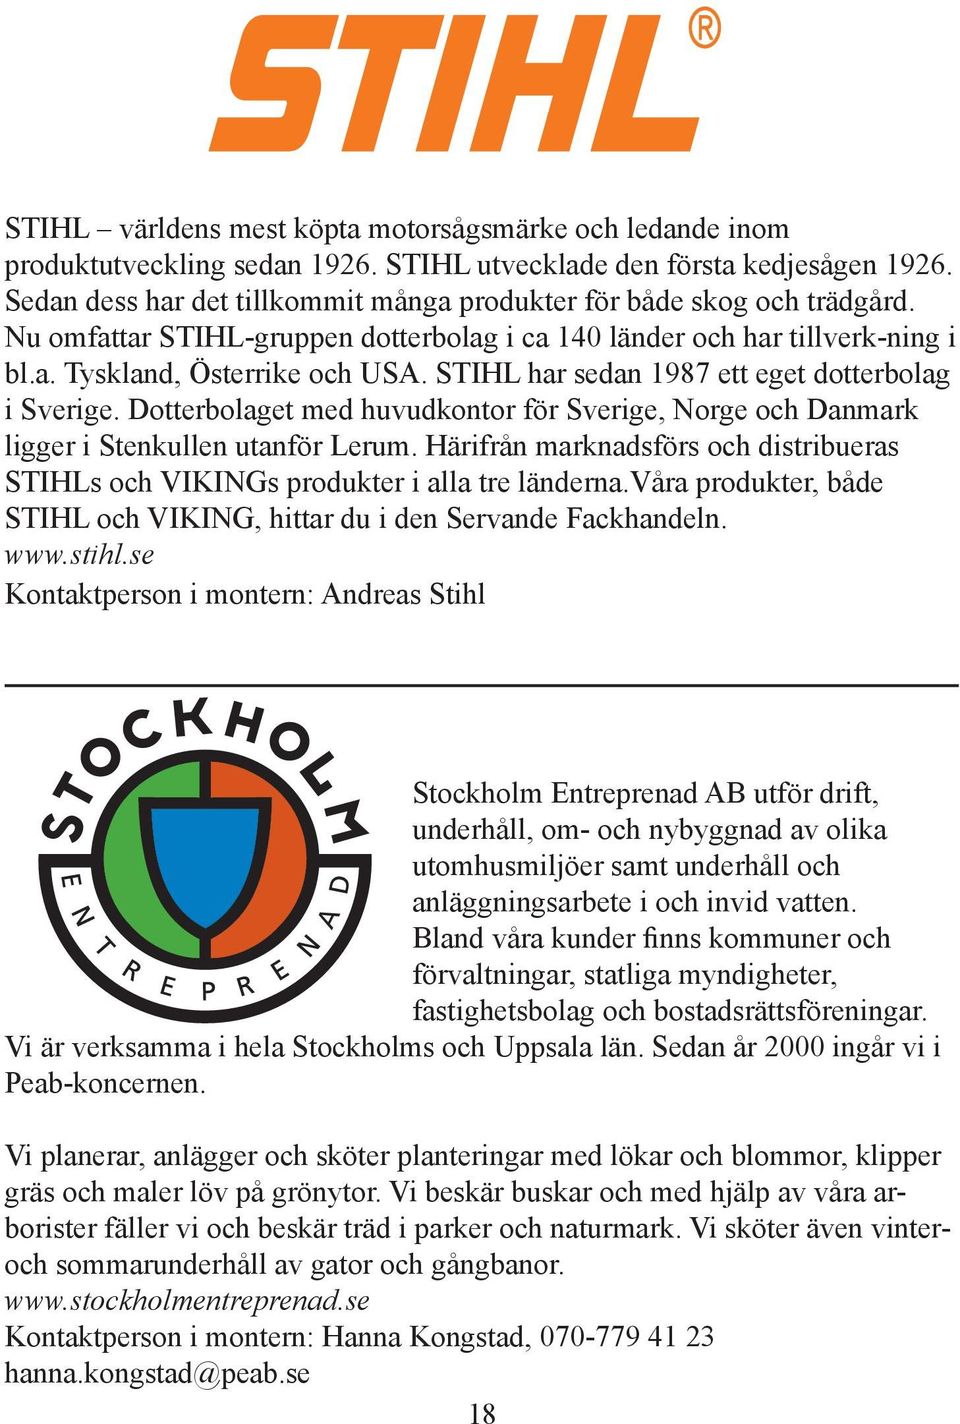 STIHL har sedan 1987 ett eget dotterbolag i Sverige. Dotterbolaget med huvudkontor för Sverige, Norge och Danmark ligger i Stenkullen utanför Lerum.